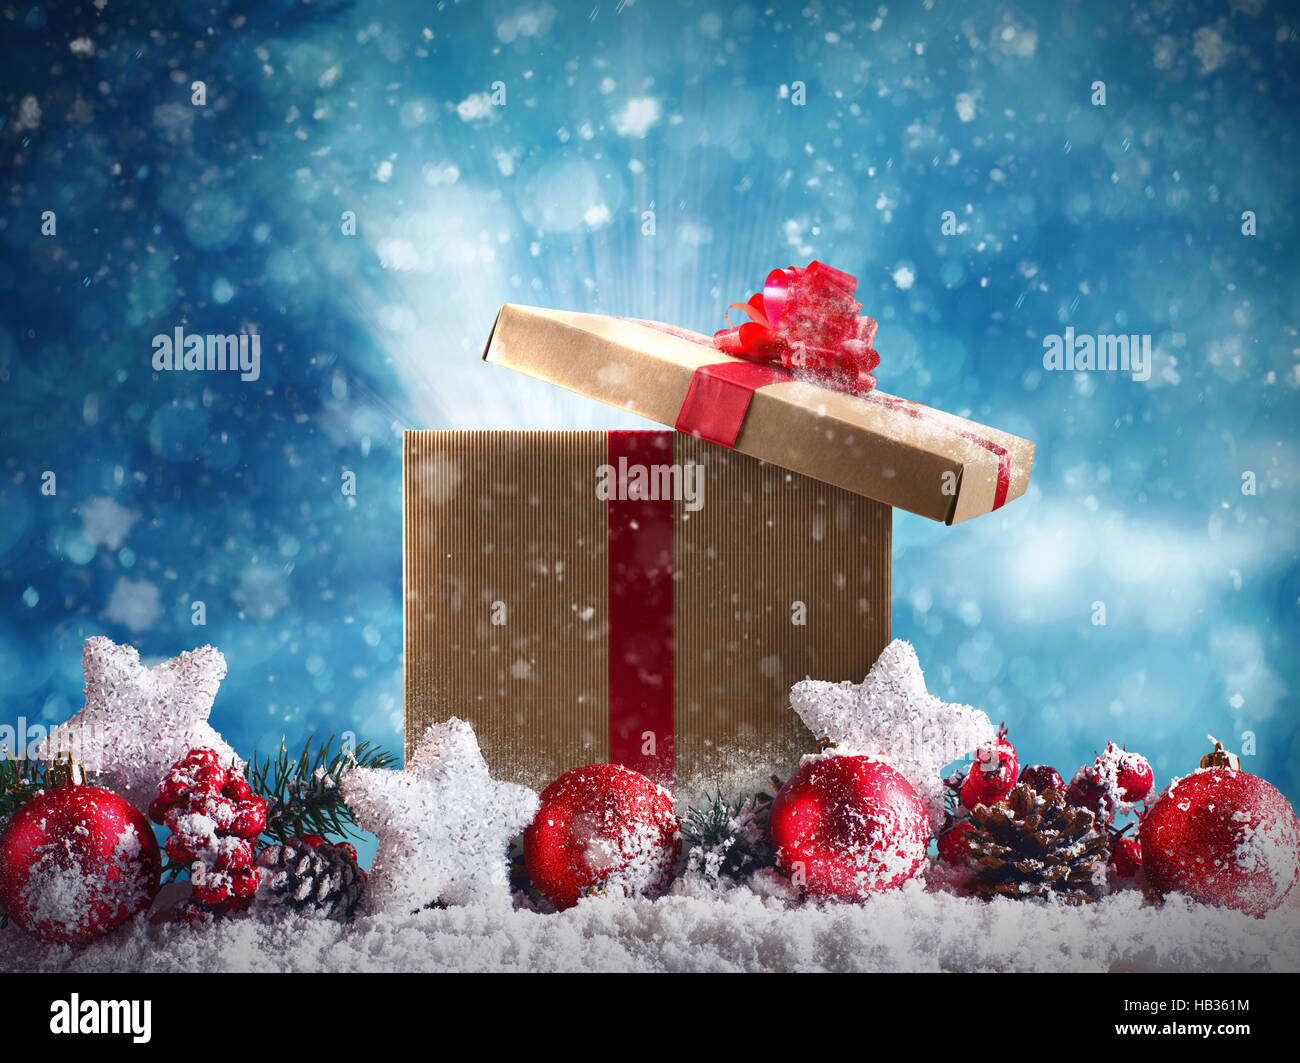 Weihnachtsgeschenk mit roten Kugeln, Sterne und Kranz Stockfoto